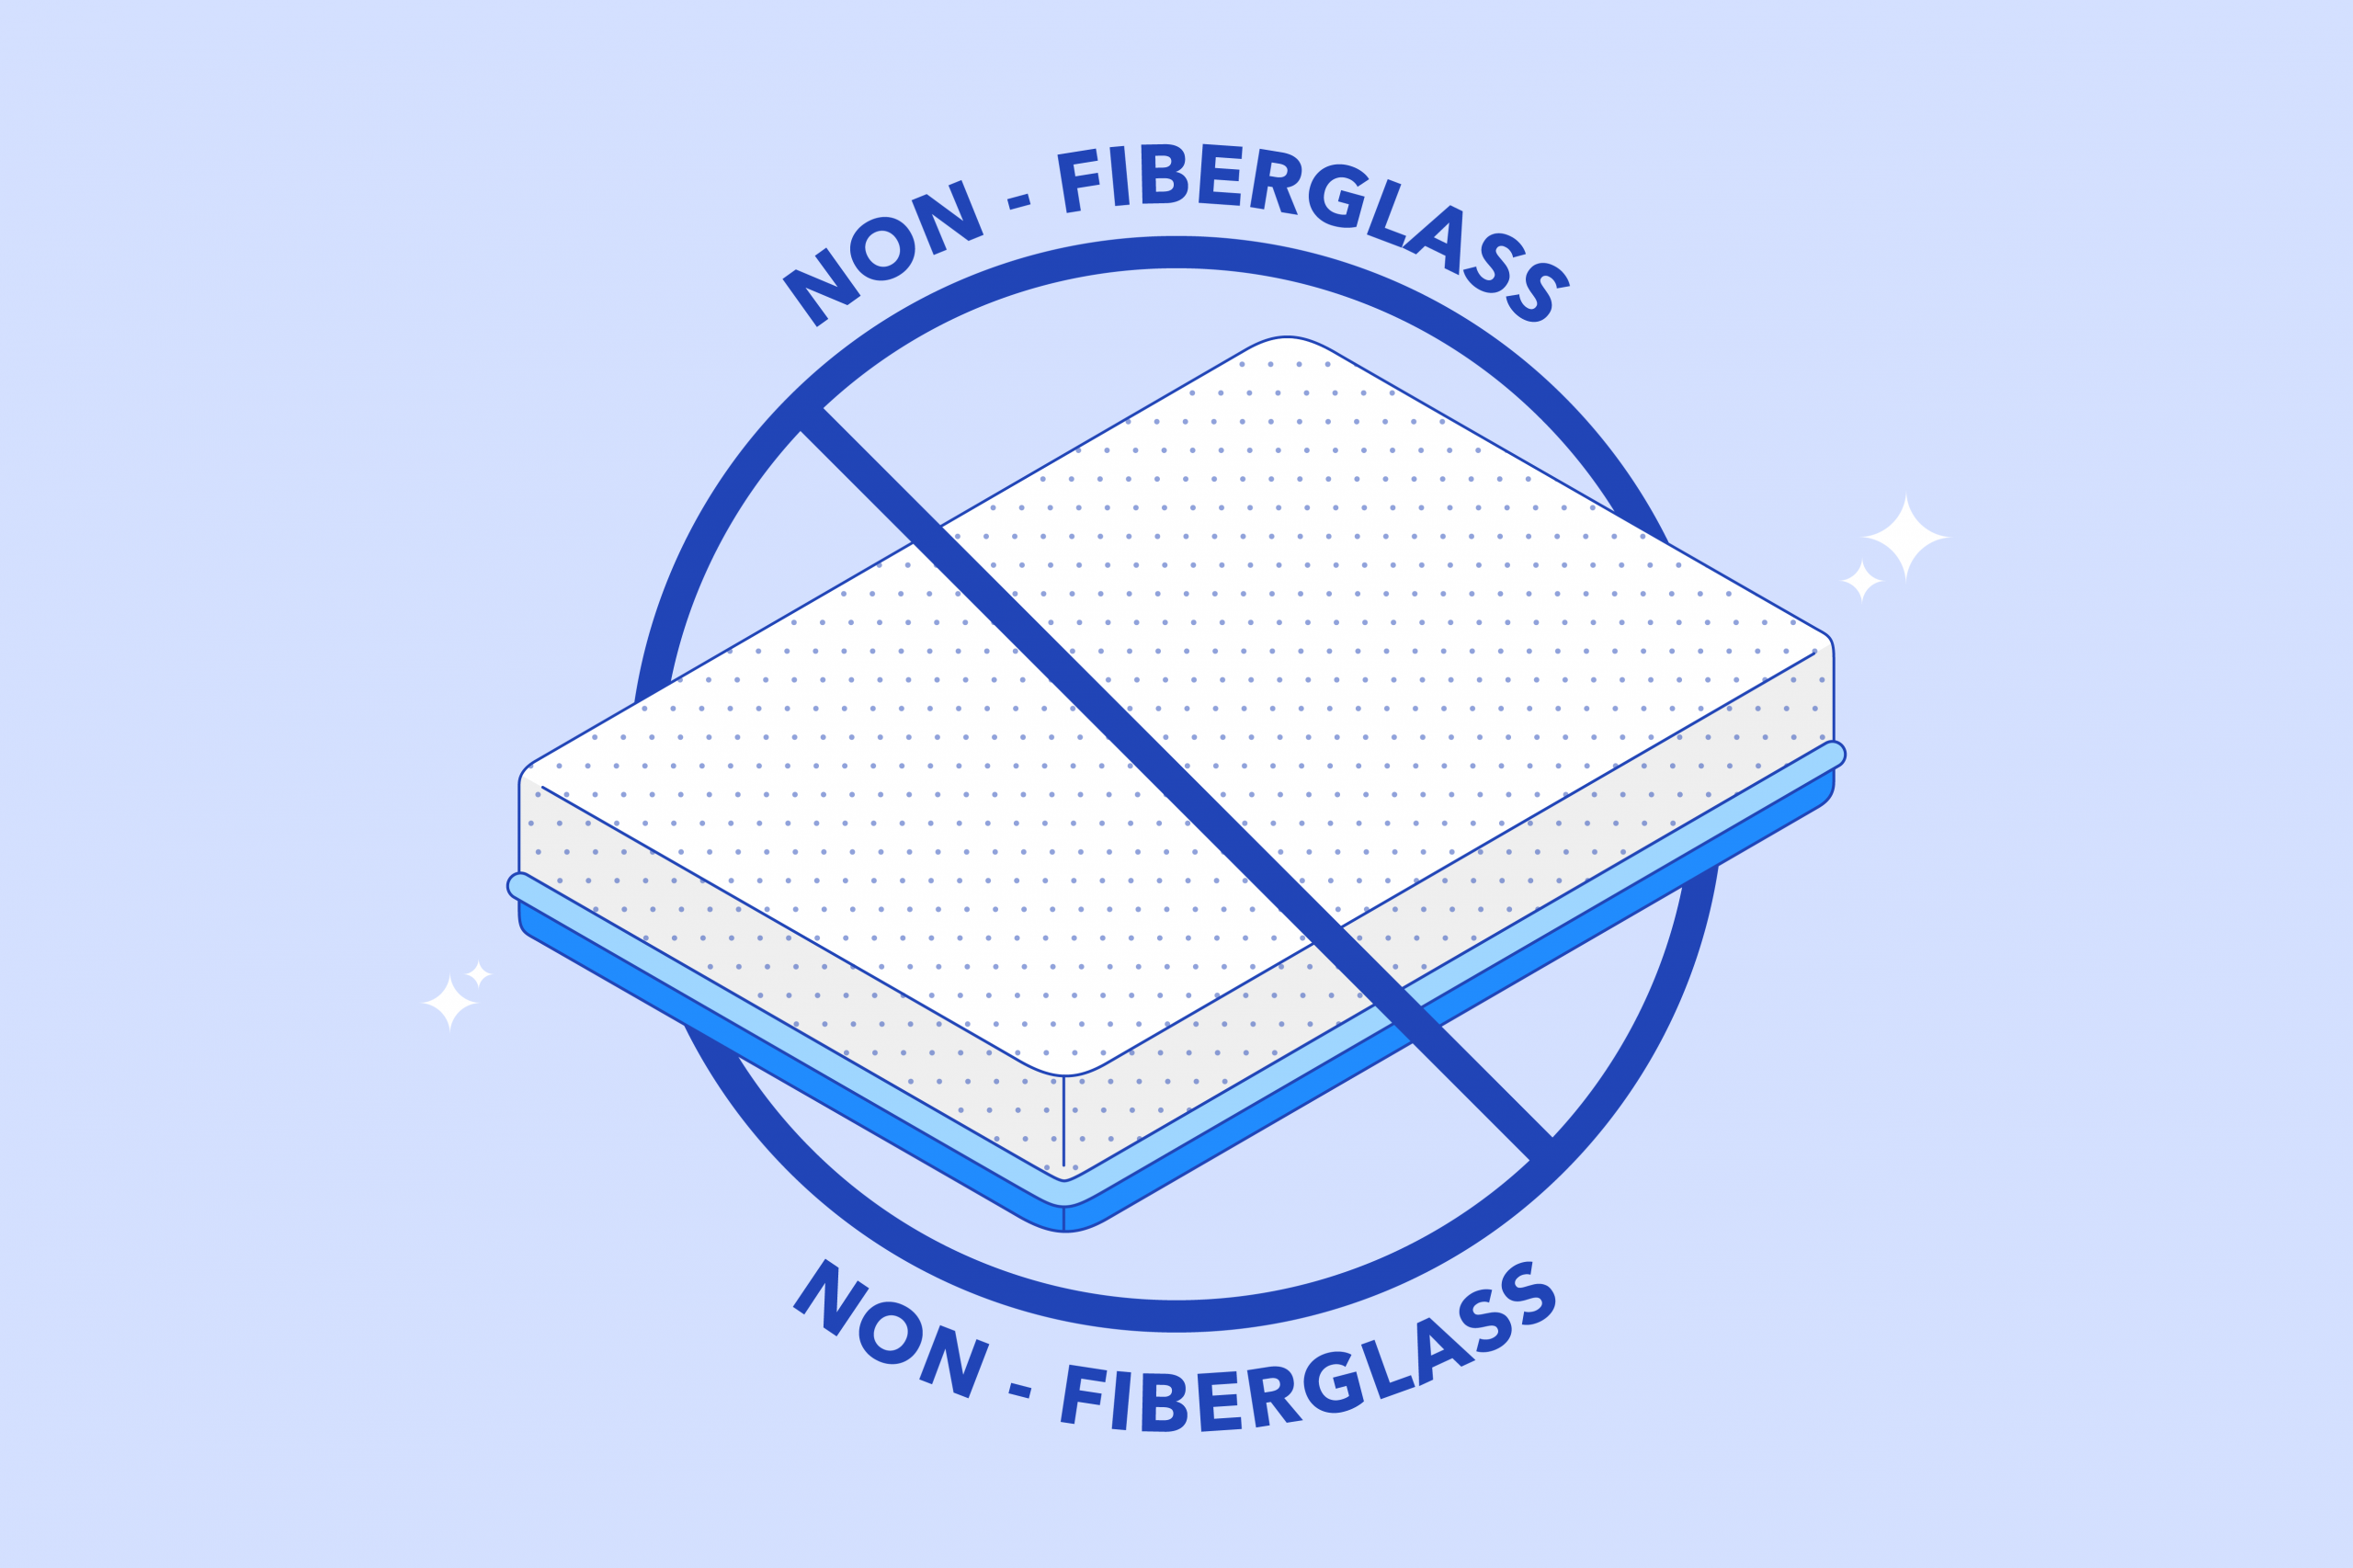 Benefits Of Sleeping On Fiberglass-Infused Bedding